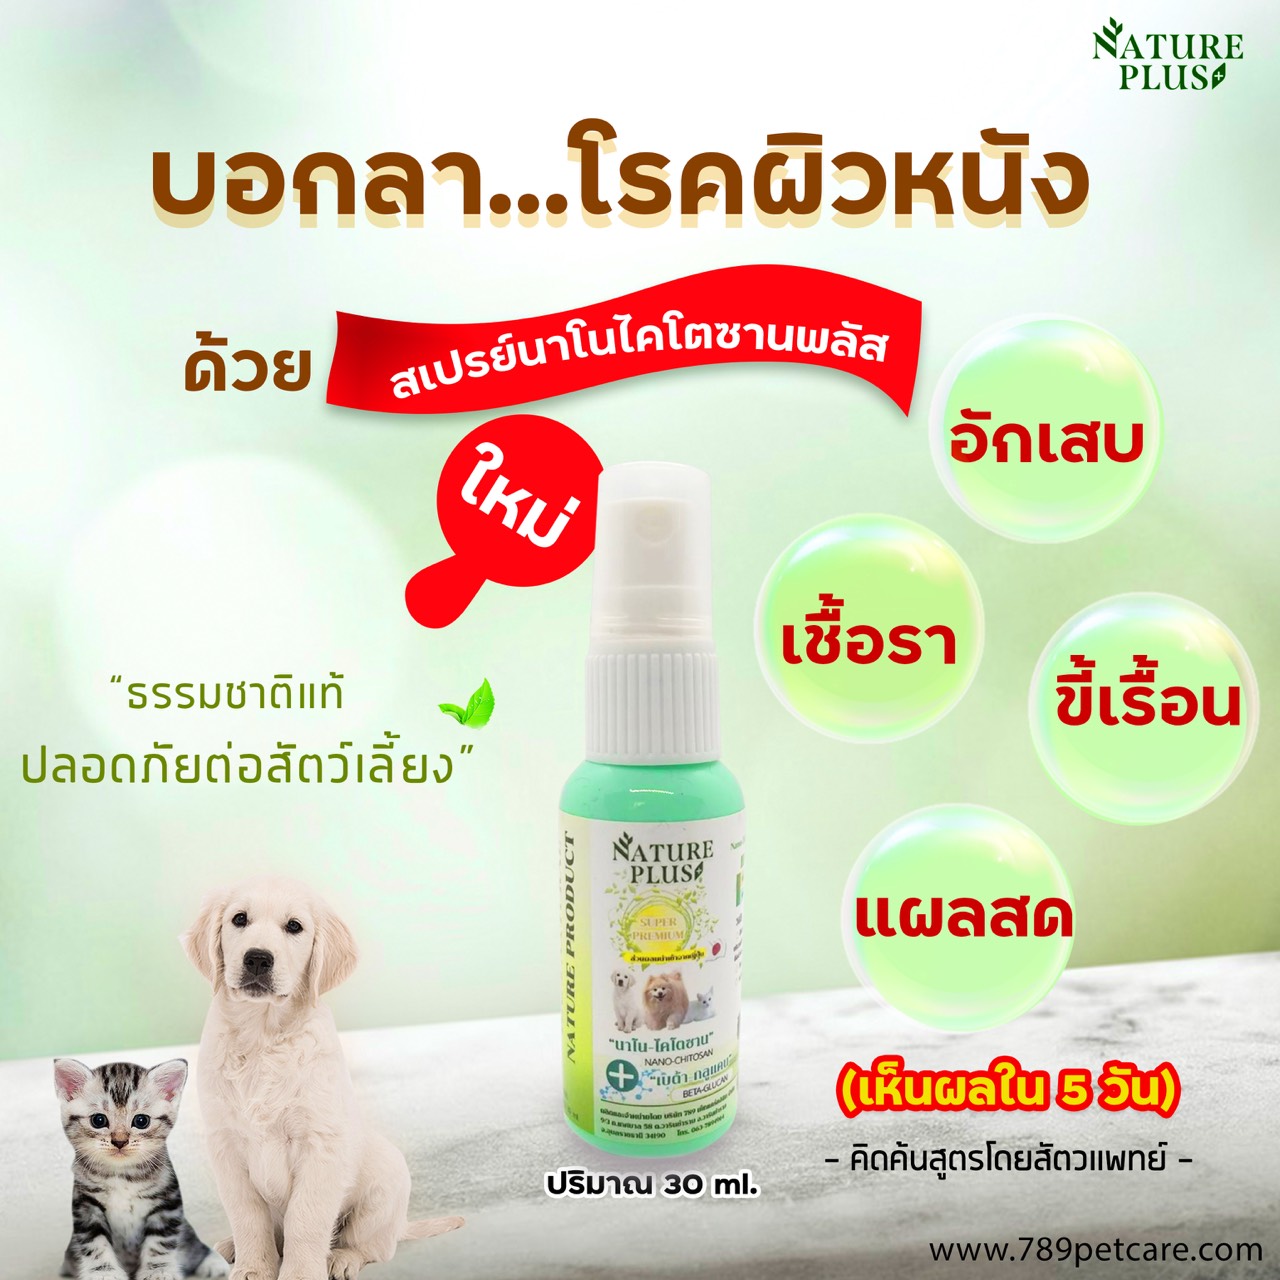 Nano Plus Spray 30 ml. สเปรย์สกัดจากธรรมชาติ 100% รักษาบาดแผล ขี้เรื้อน เชื้อรา อาการคันจากเห็บหมัดกัด สำหรับสุนัข แมว กระต่าย (30 มล./ขวด)